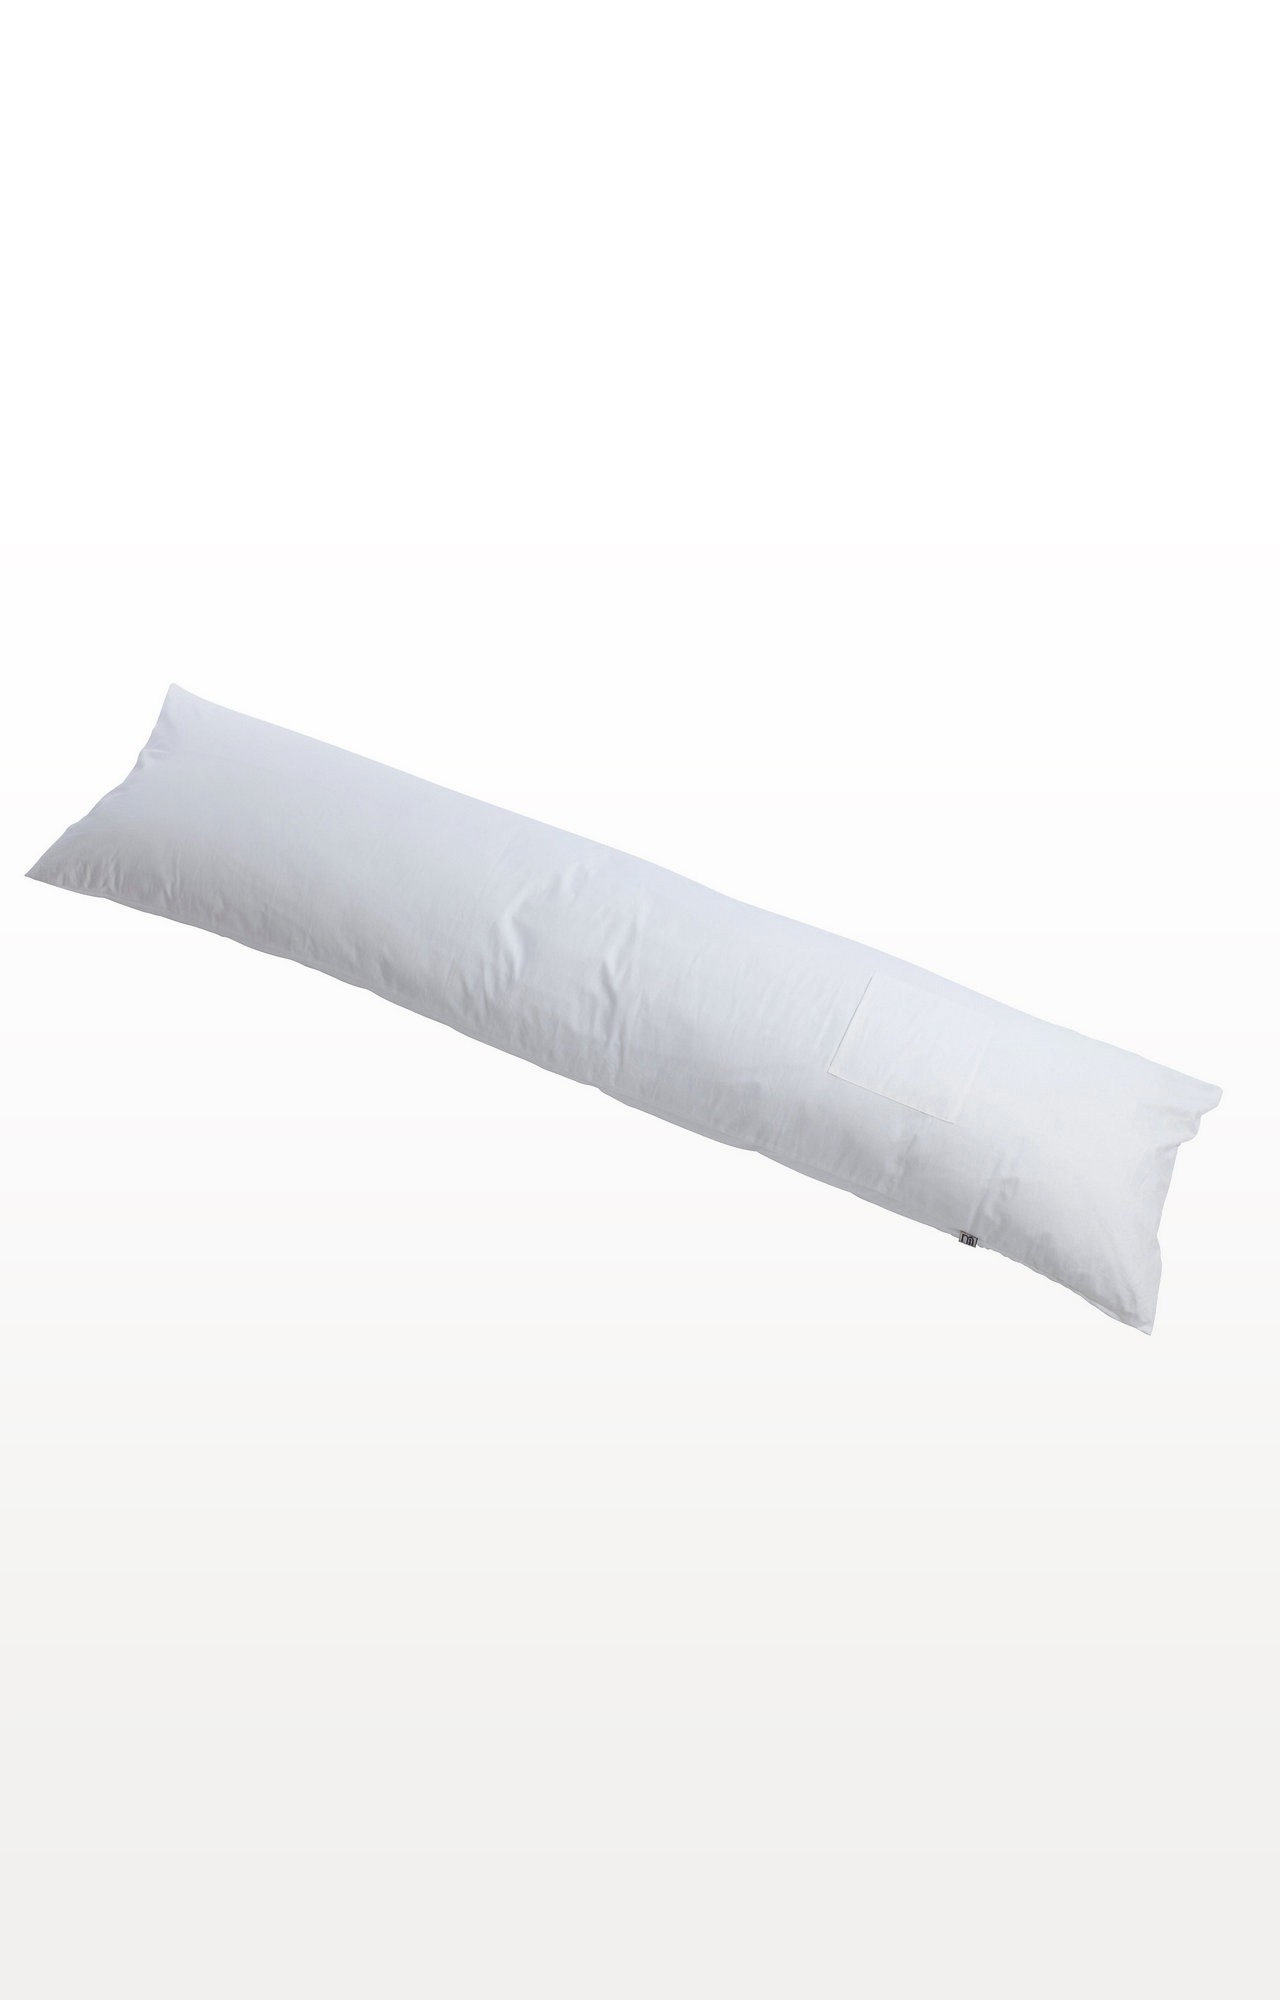 White Narrow Sleep Body Pillow